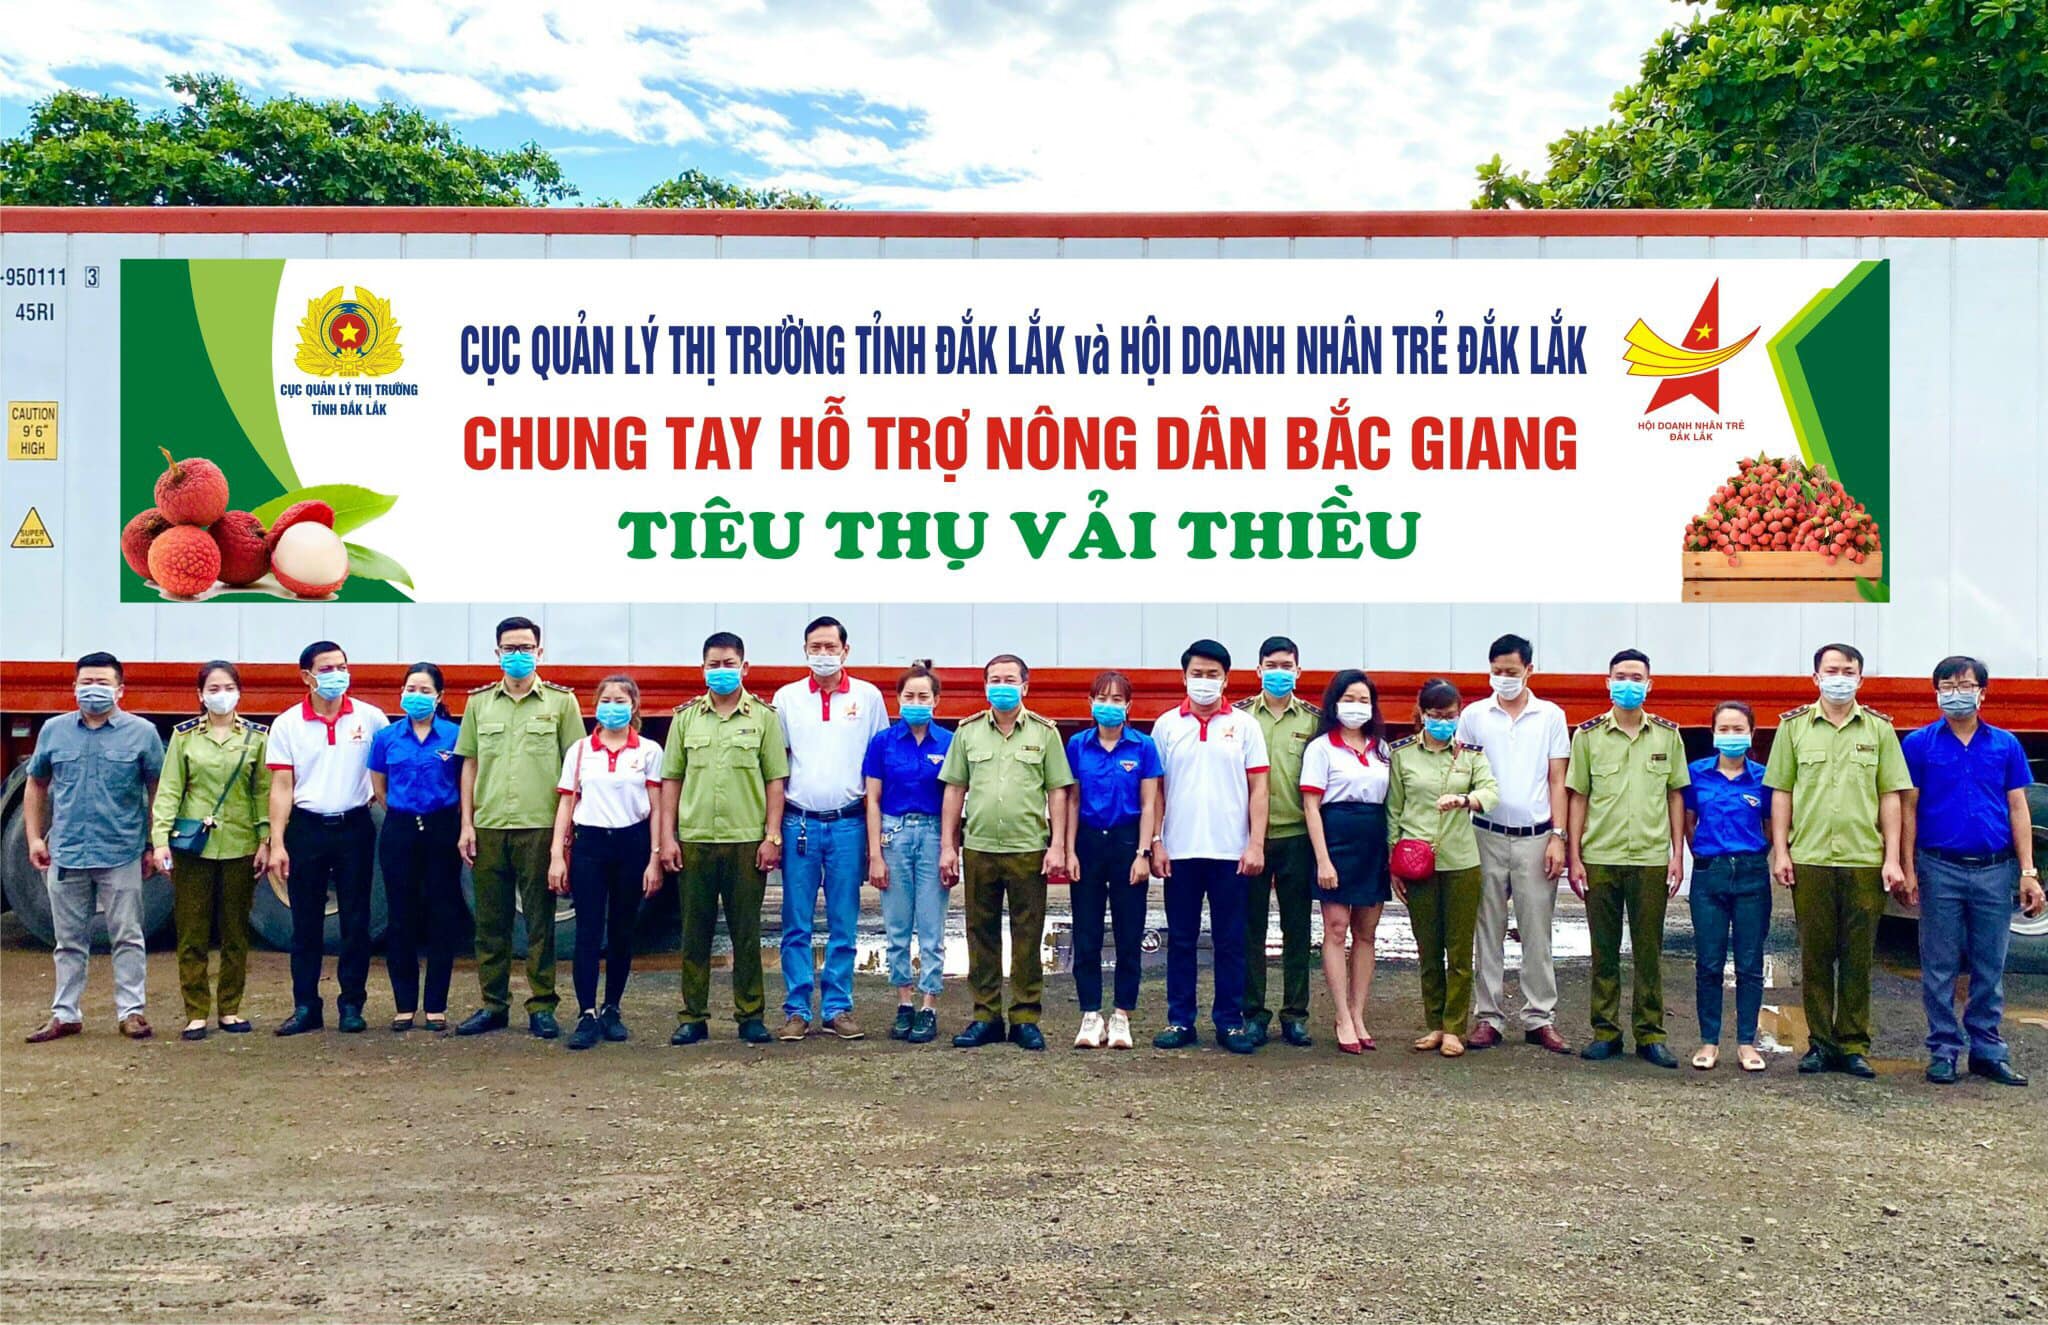 Hội Doanh nhân Trẻ tỉnh Đắk Lắk hỗ trợ tiêu thụ vải thiều Bắc Giang